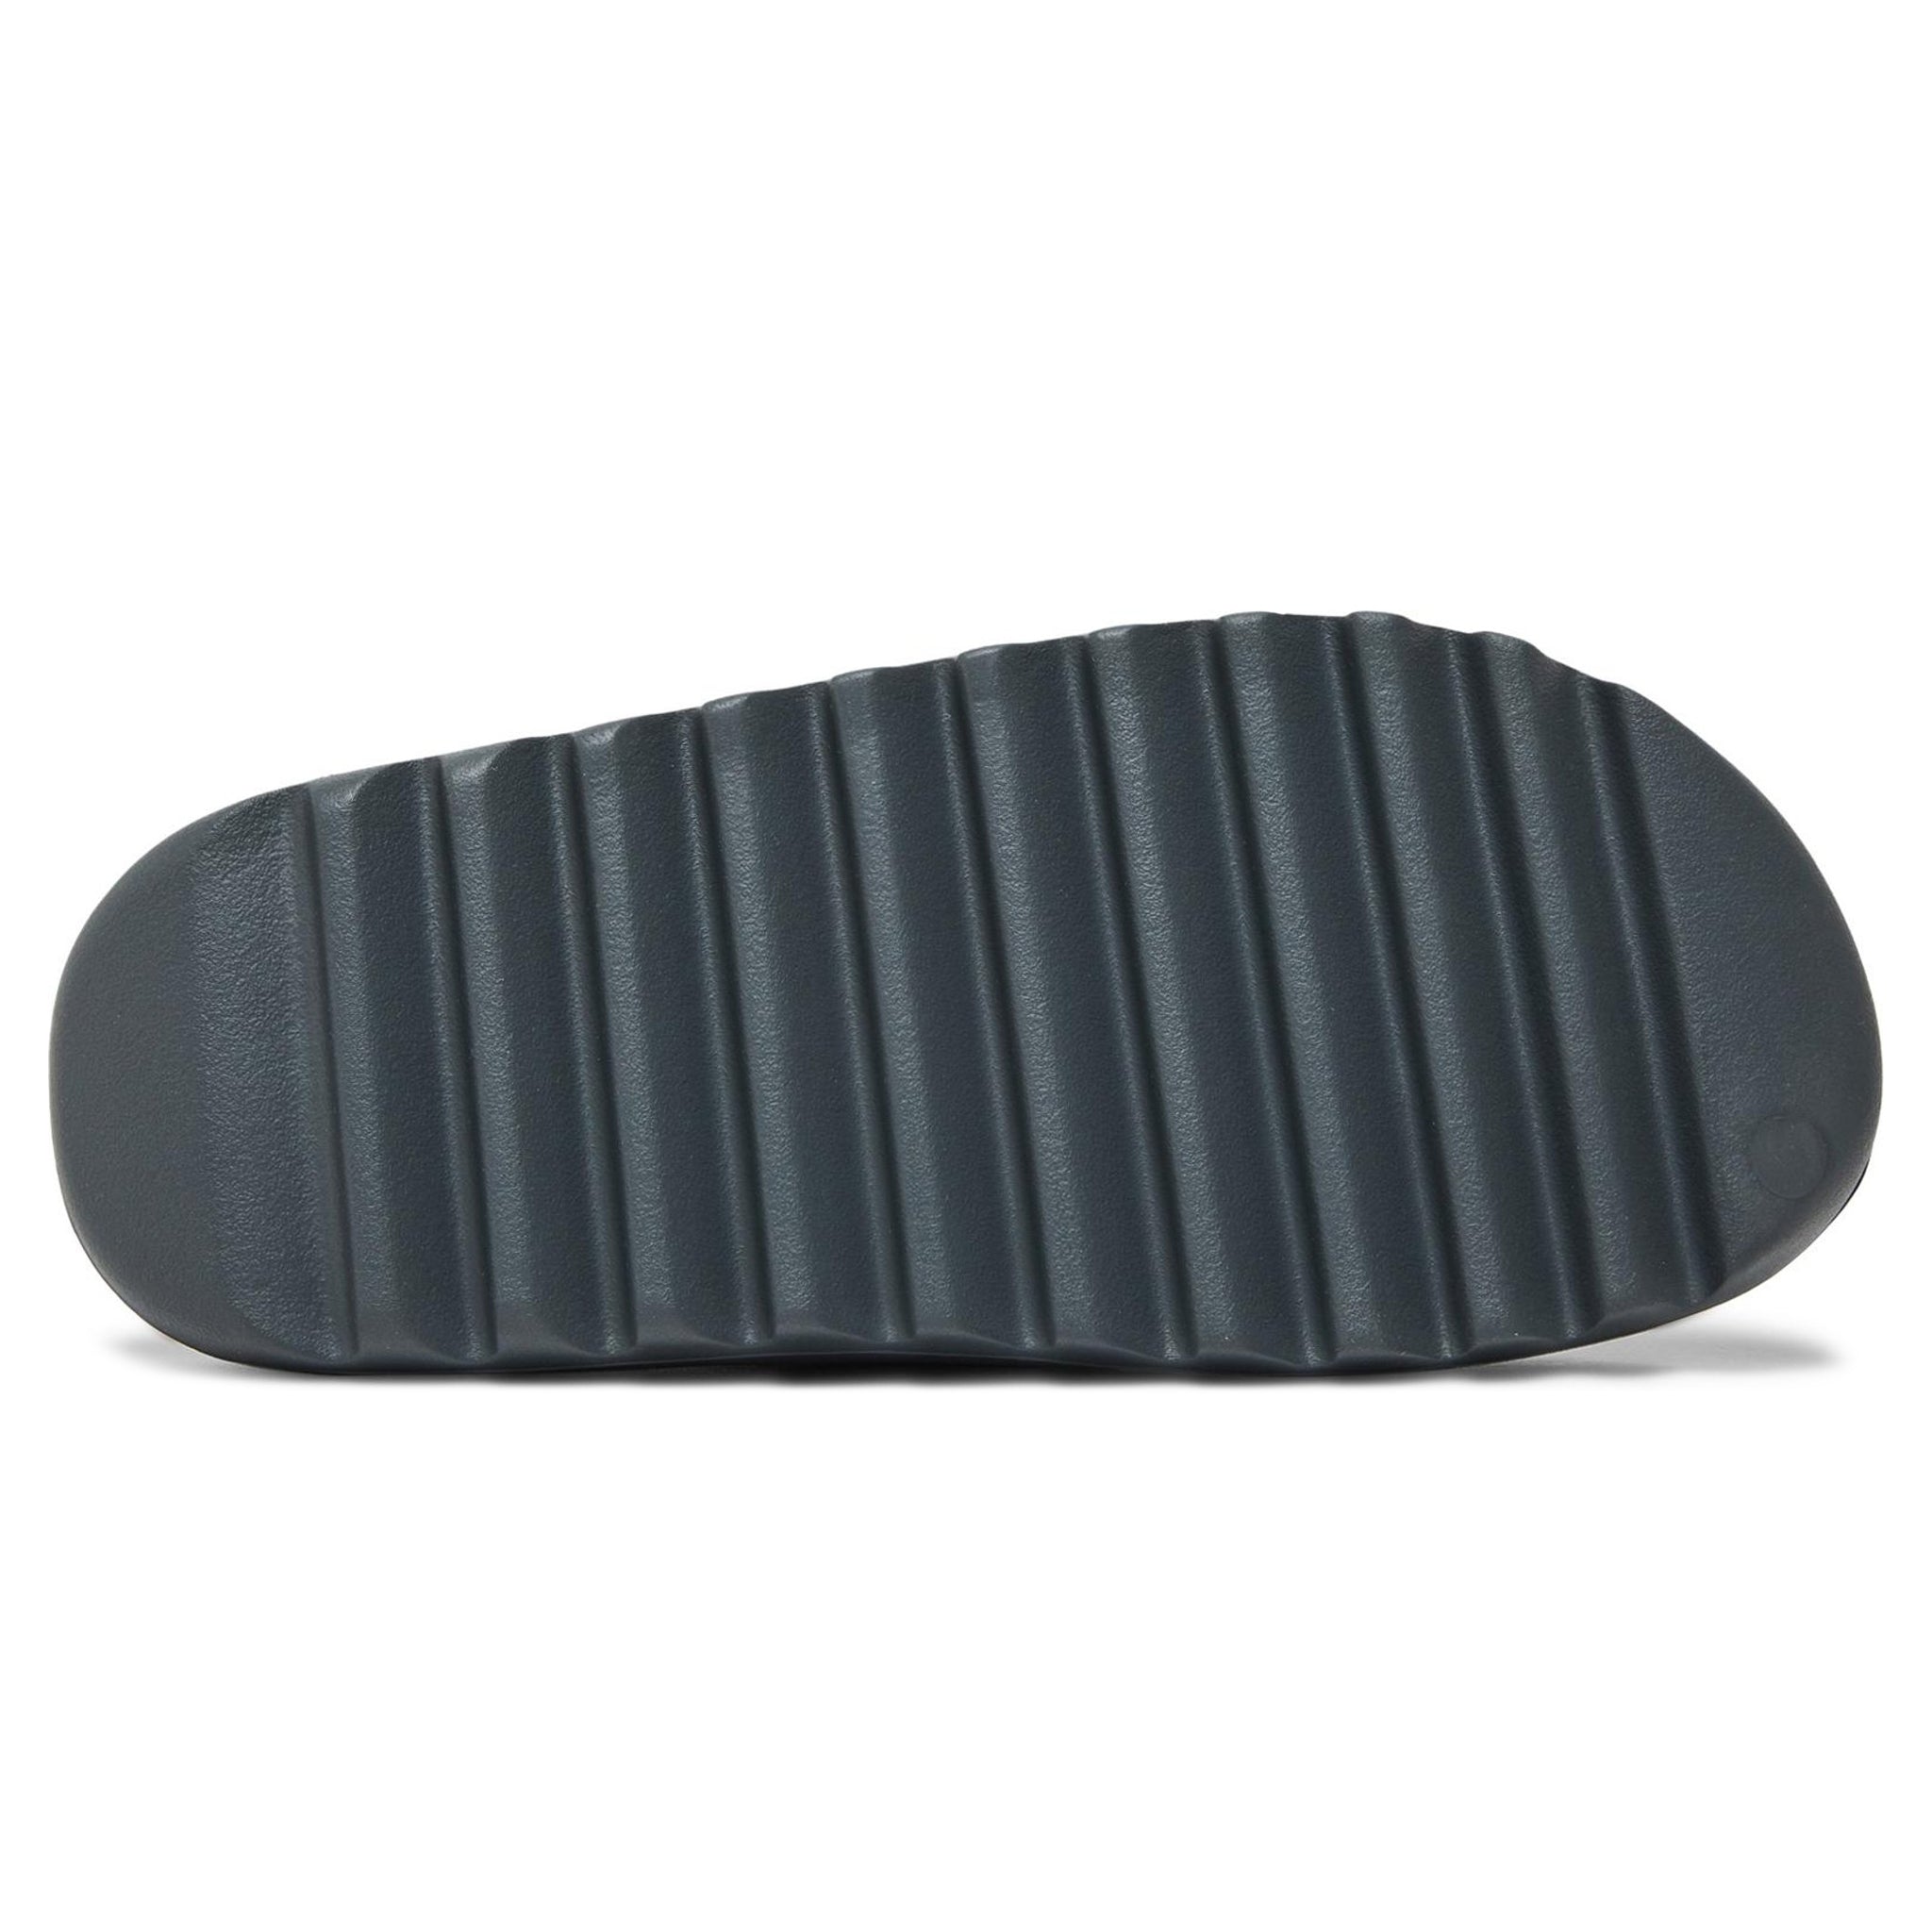 Sole view of Adidas Yeezy Slide Slate Grey ID2350